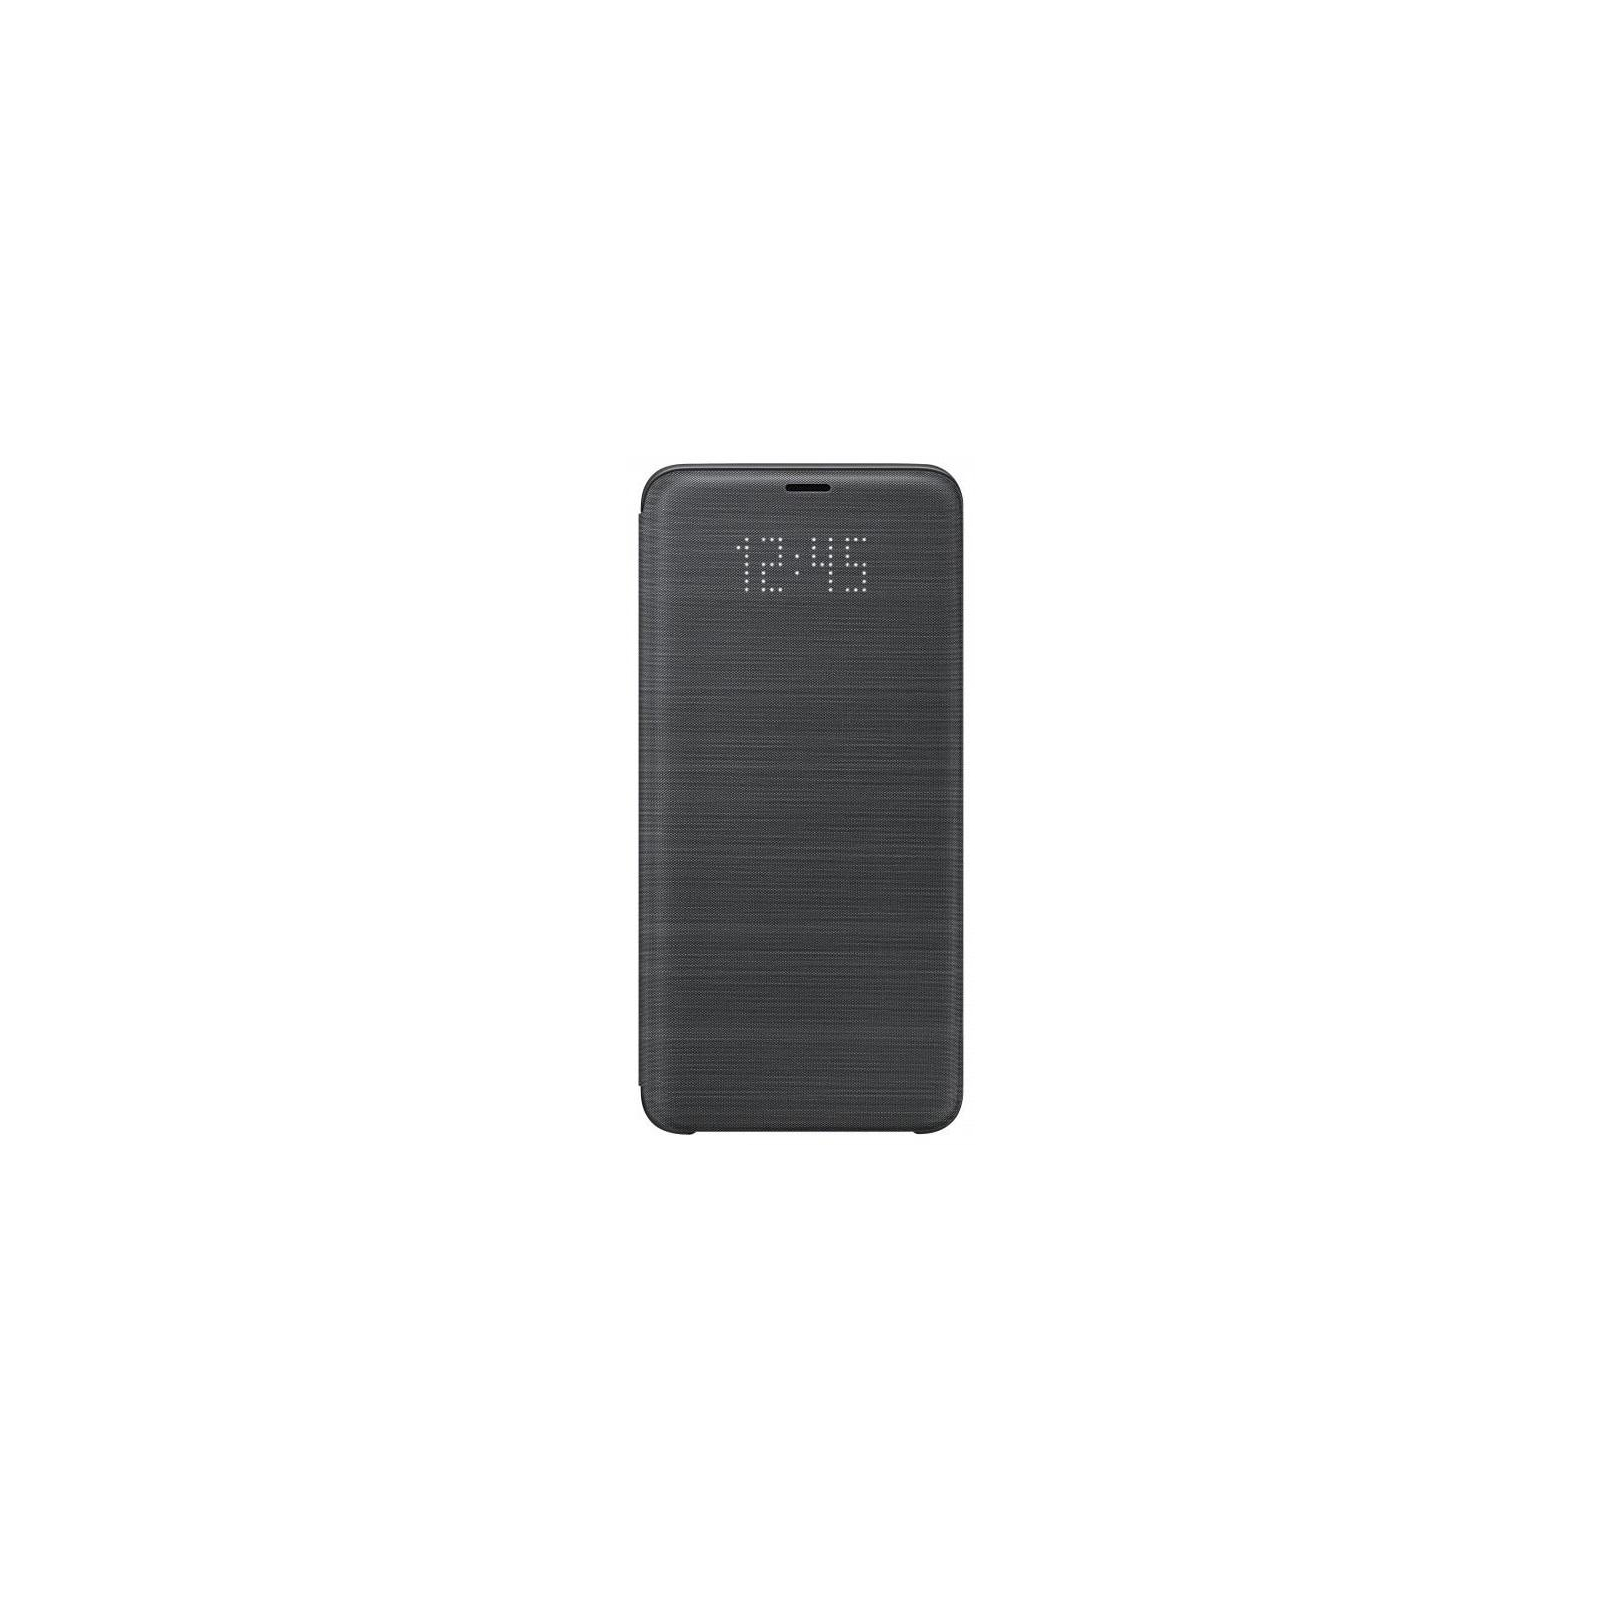 Чехол для мобильного телефона Samsung для Galaxy S9+ (G965) LED View Cover Black (EF-NG965PBEGRU)